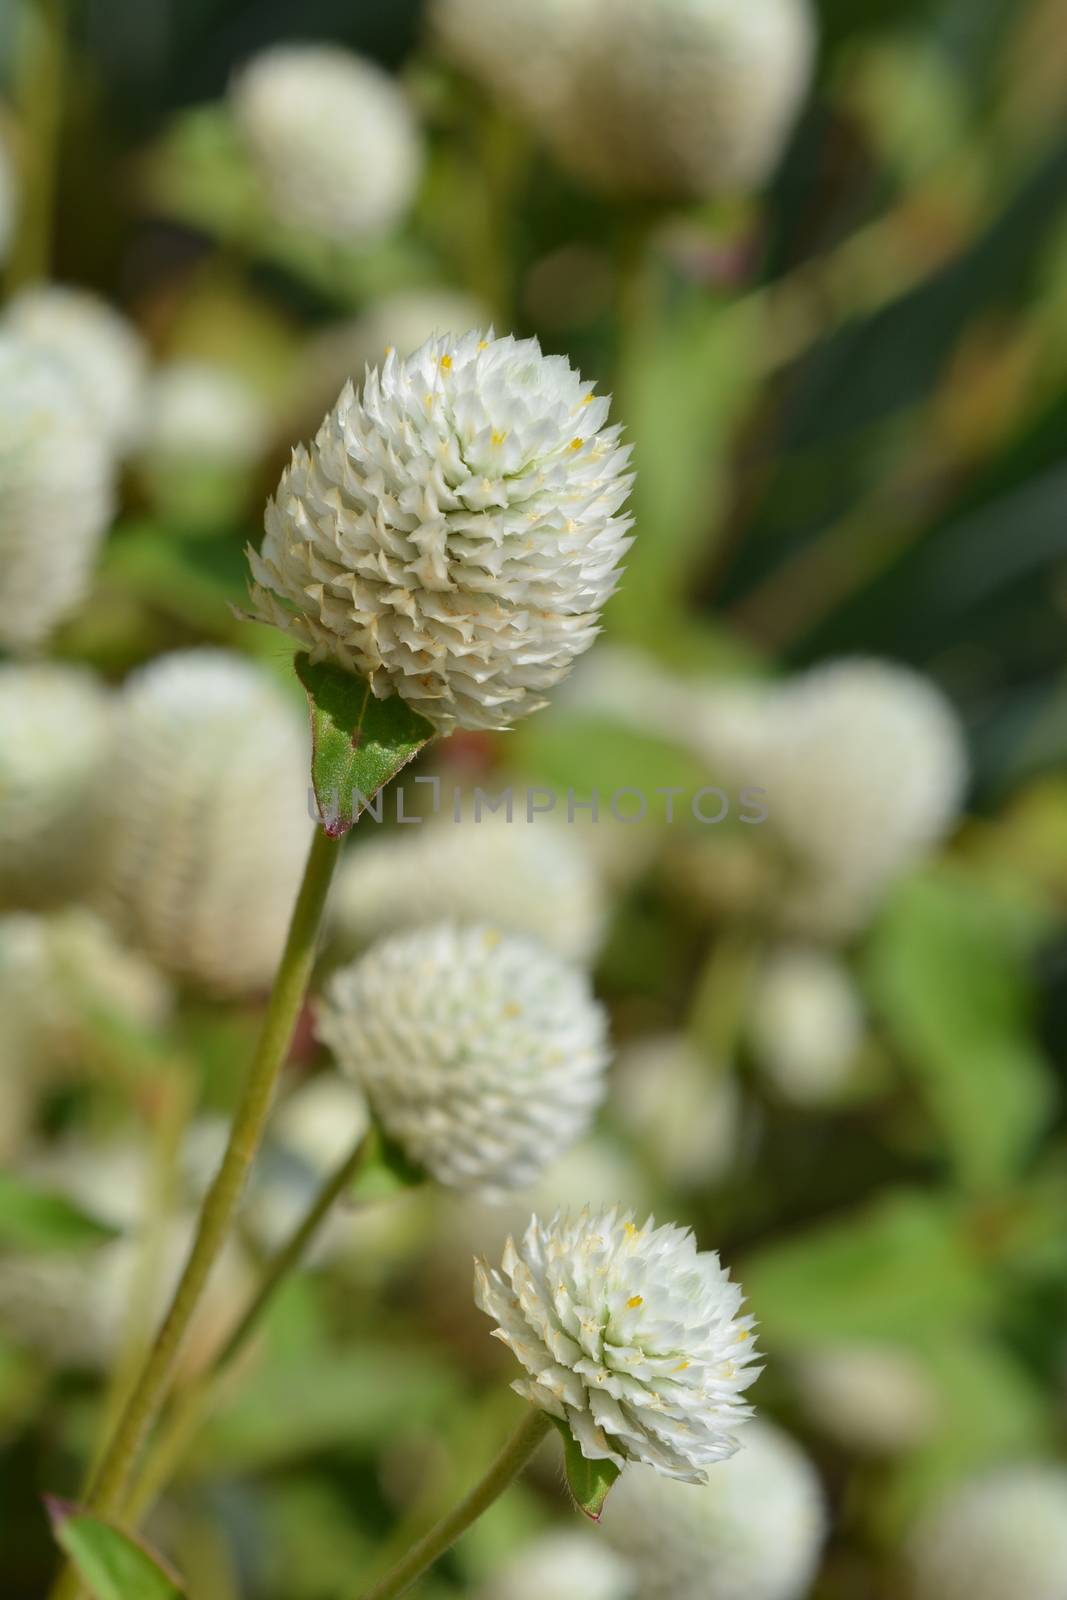 White globe amaranth - Latin name - Gomphrena globosa Alba